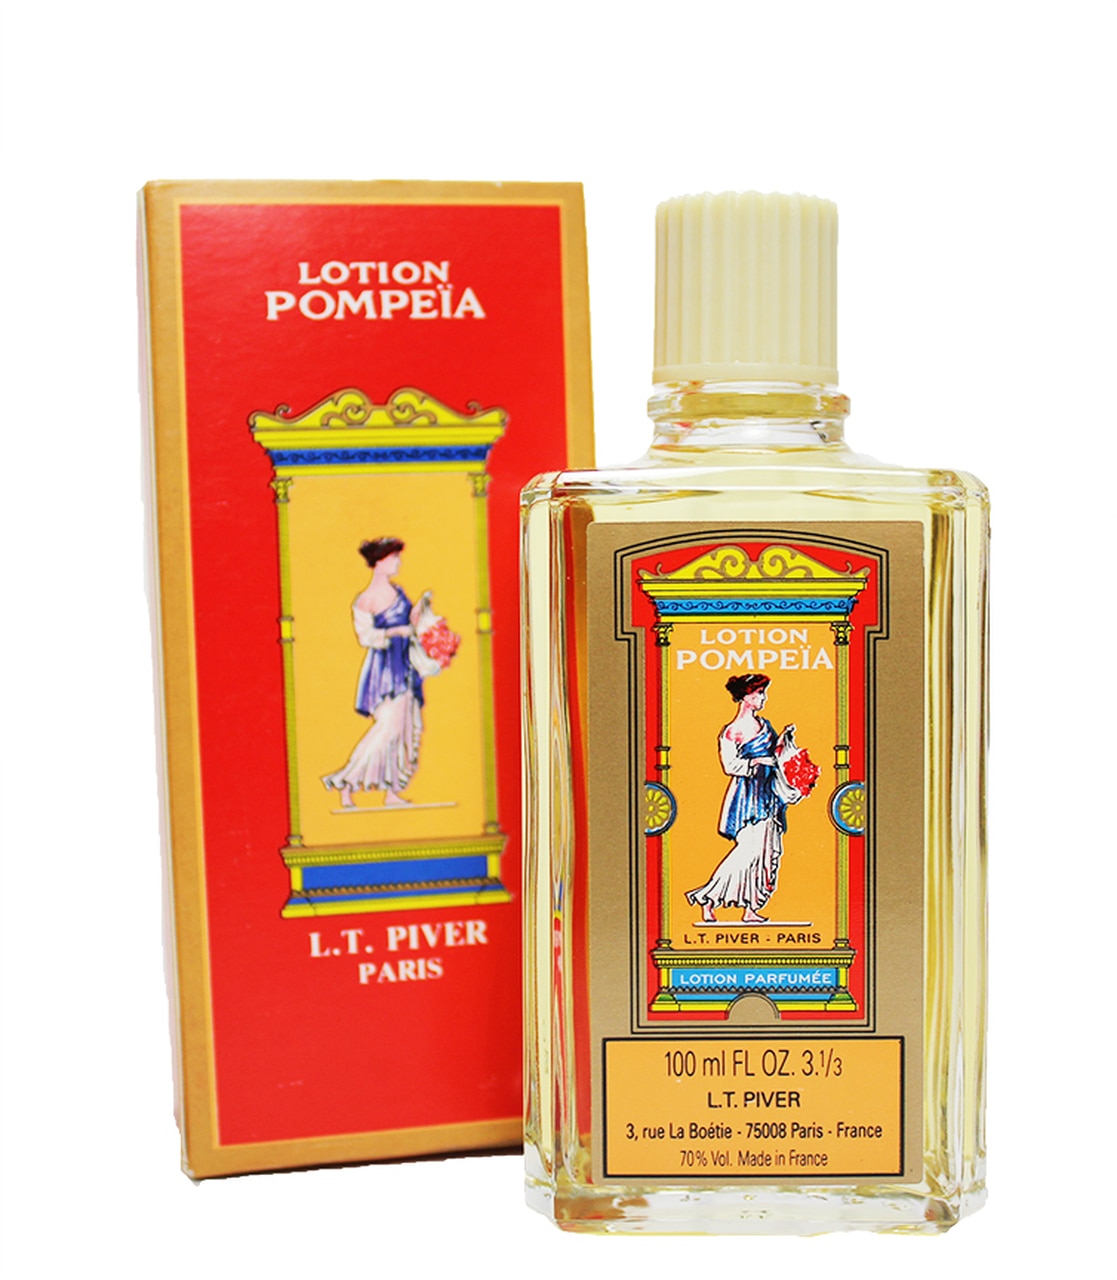 Pompeia Lotion Perfume